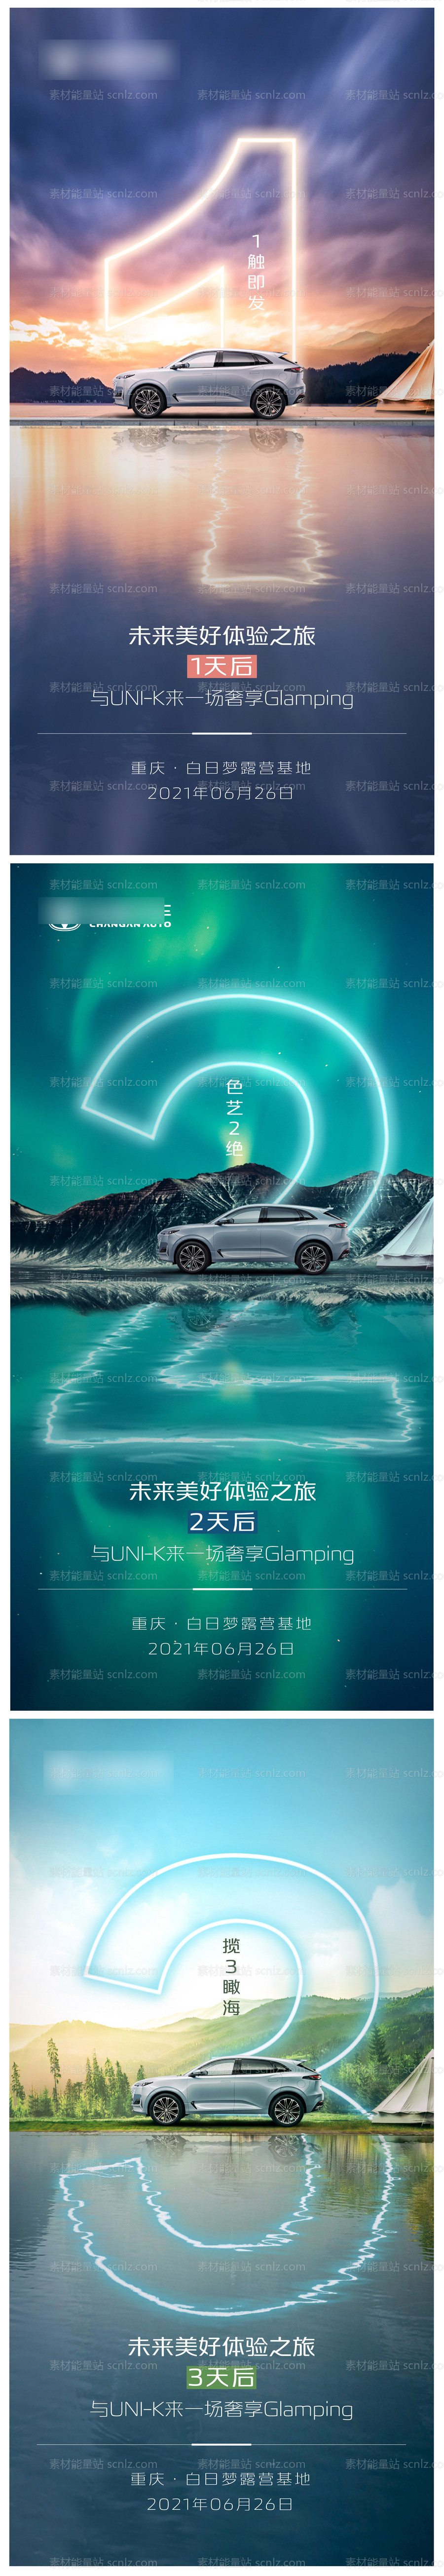 素材能量站-汽车销售活动倒计时系列海报